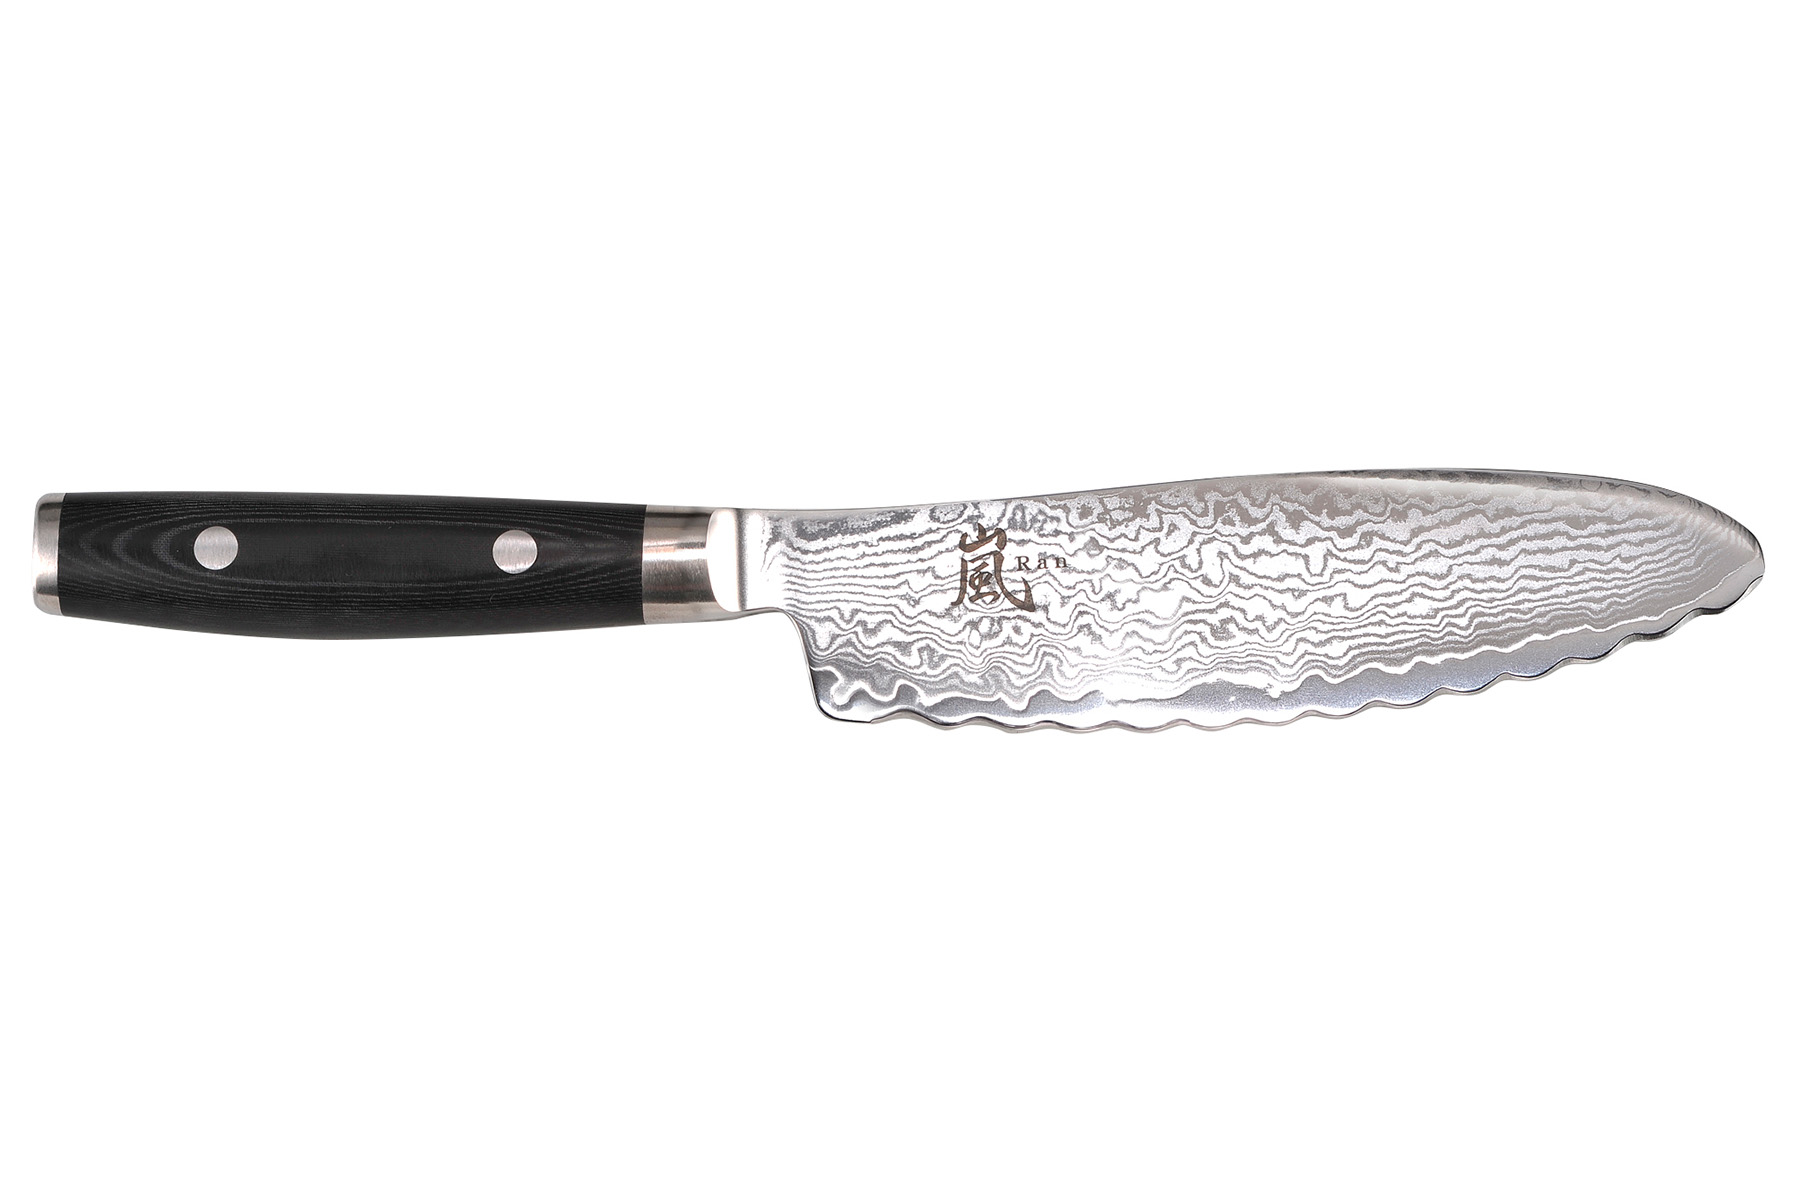 Couteau japonais Yaxell "Ran" - Couteau à panini 15 cm